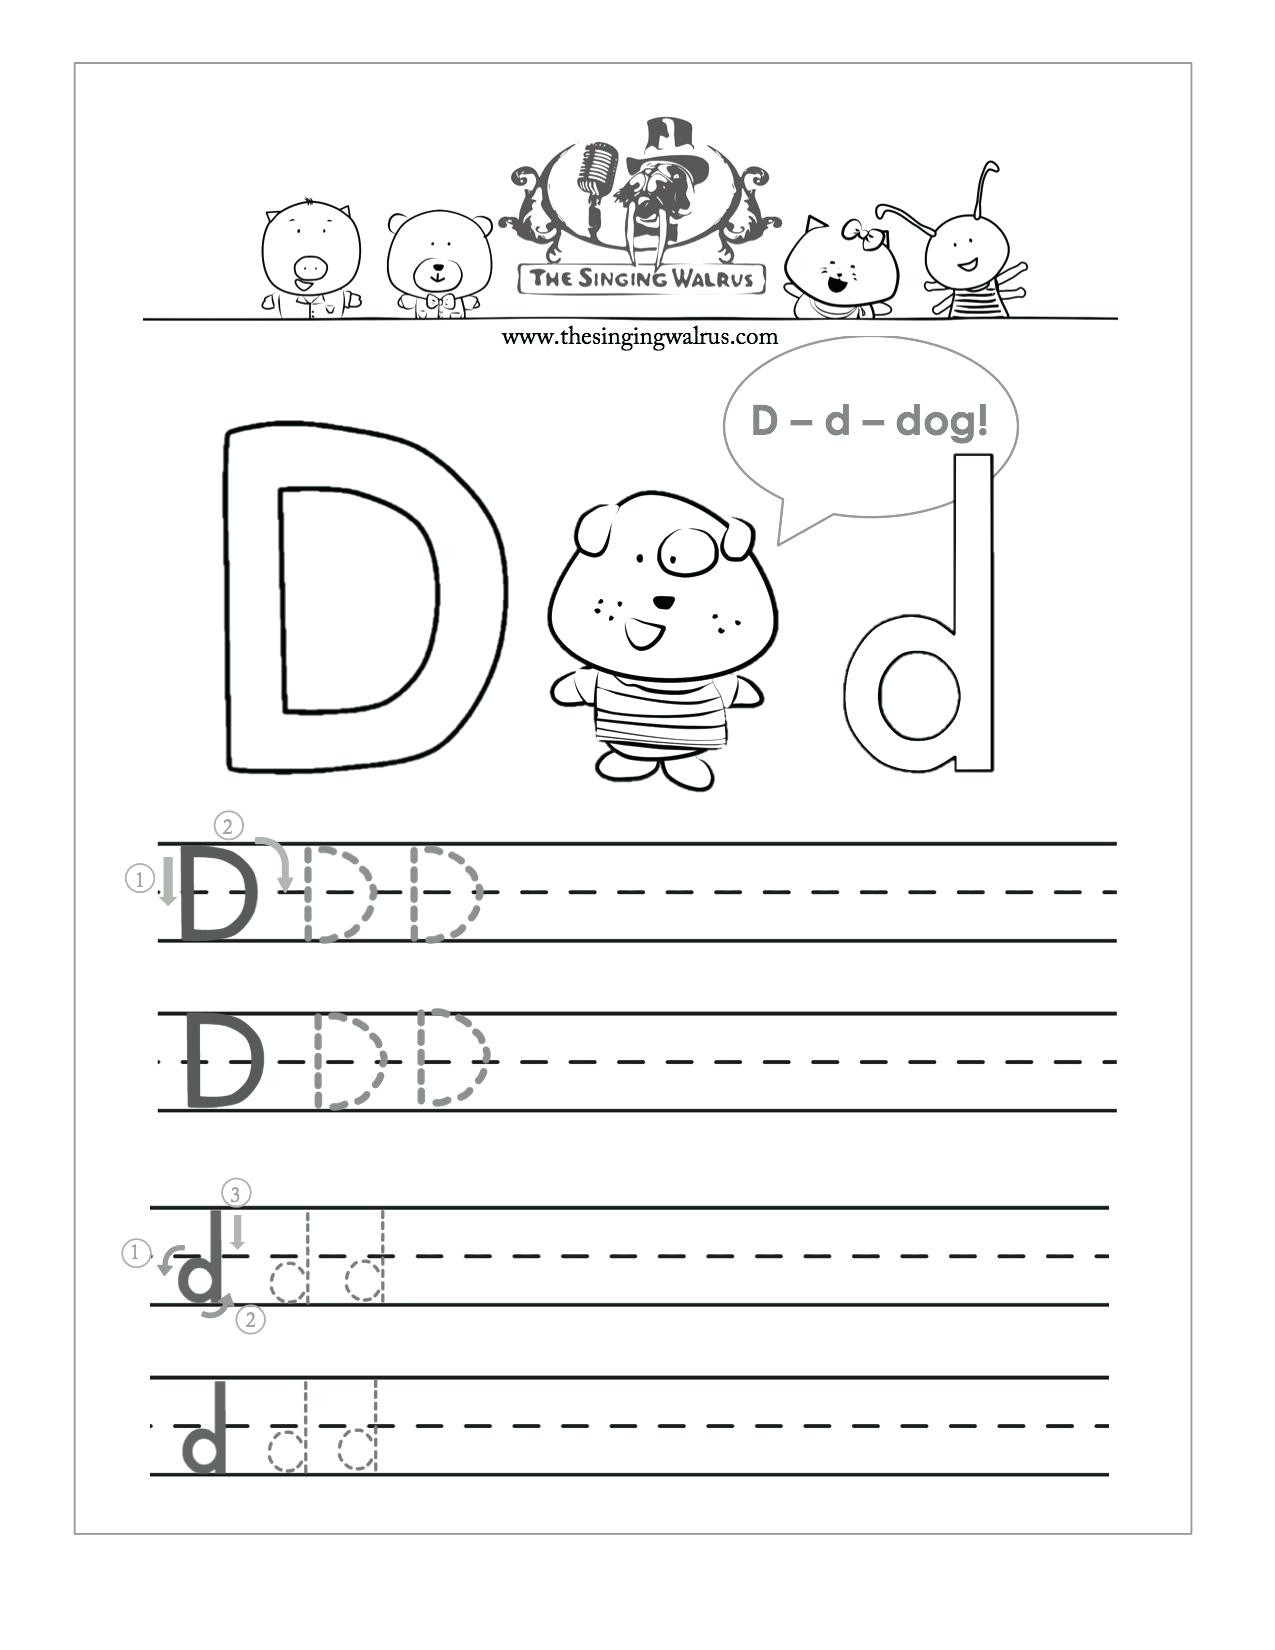 Letter D Worksheet Preschool Letter D Worksheets for Free Download Letter D Worksheets